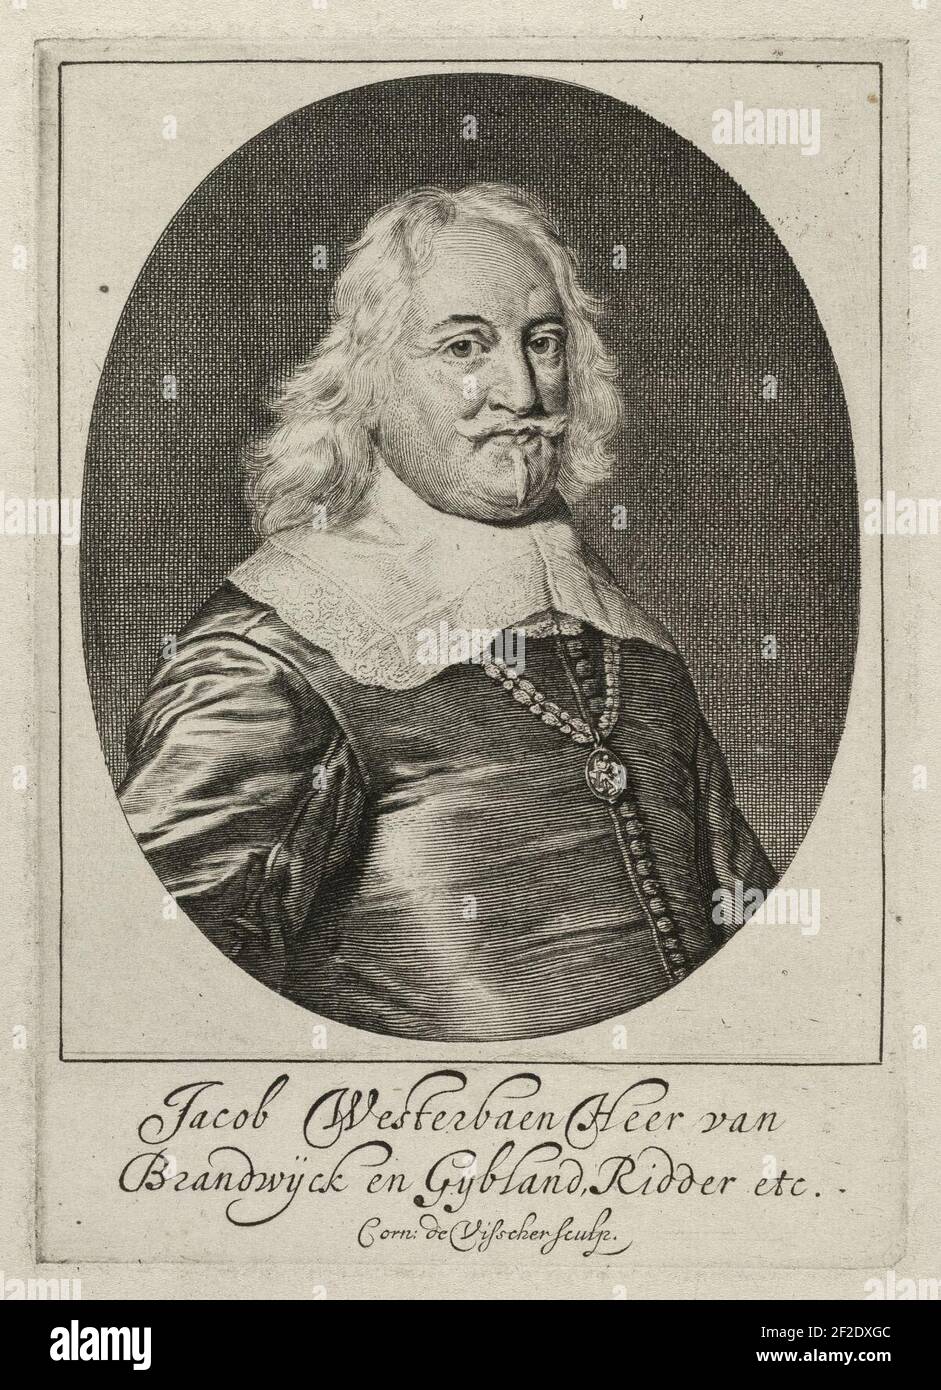 Portret van Jacob Westerbaen, heer van Brantwyck-en-Ghybelant Nederlandse ridder, dichter, arts en remonstrants predikant. Om zijn hals een keten waaraan een medaillion. Stock Photo